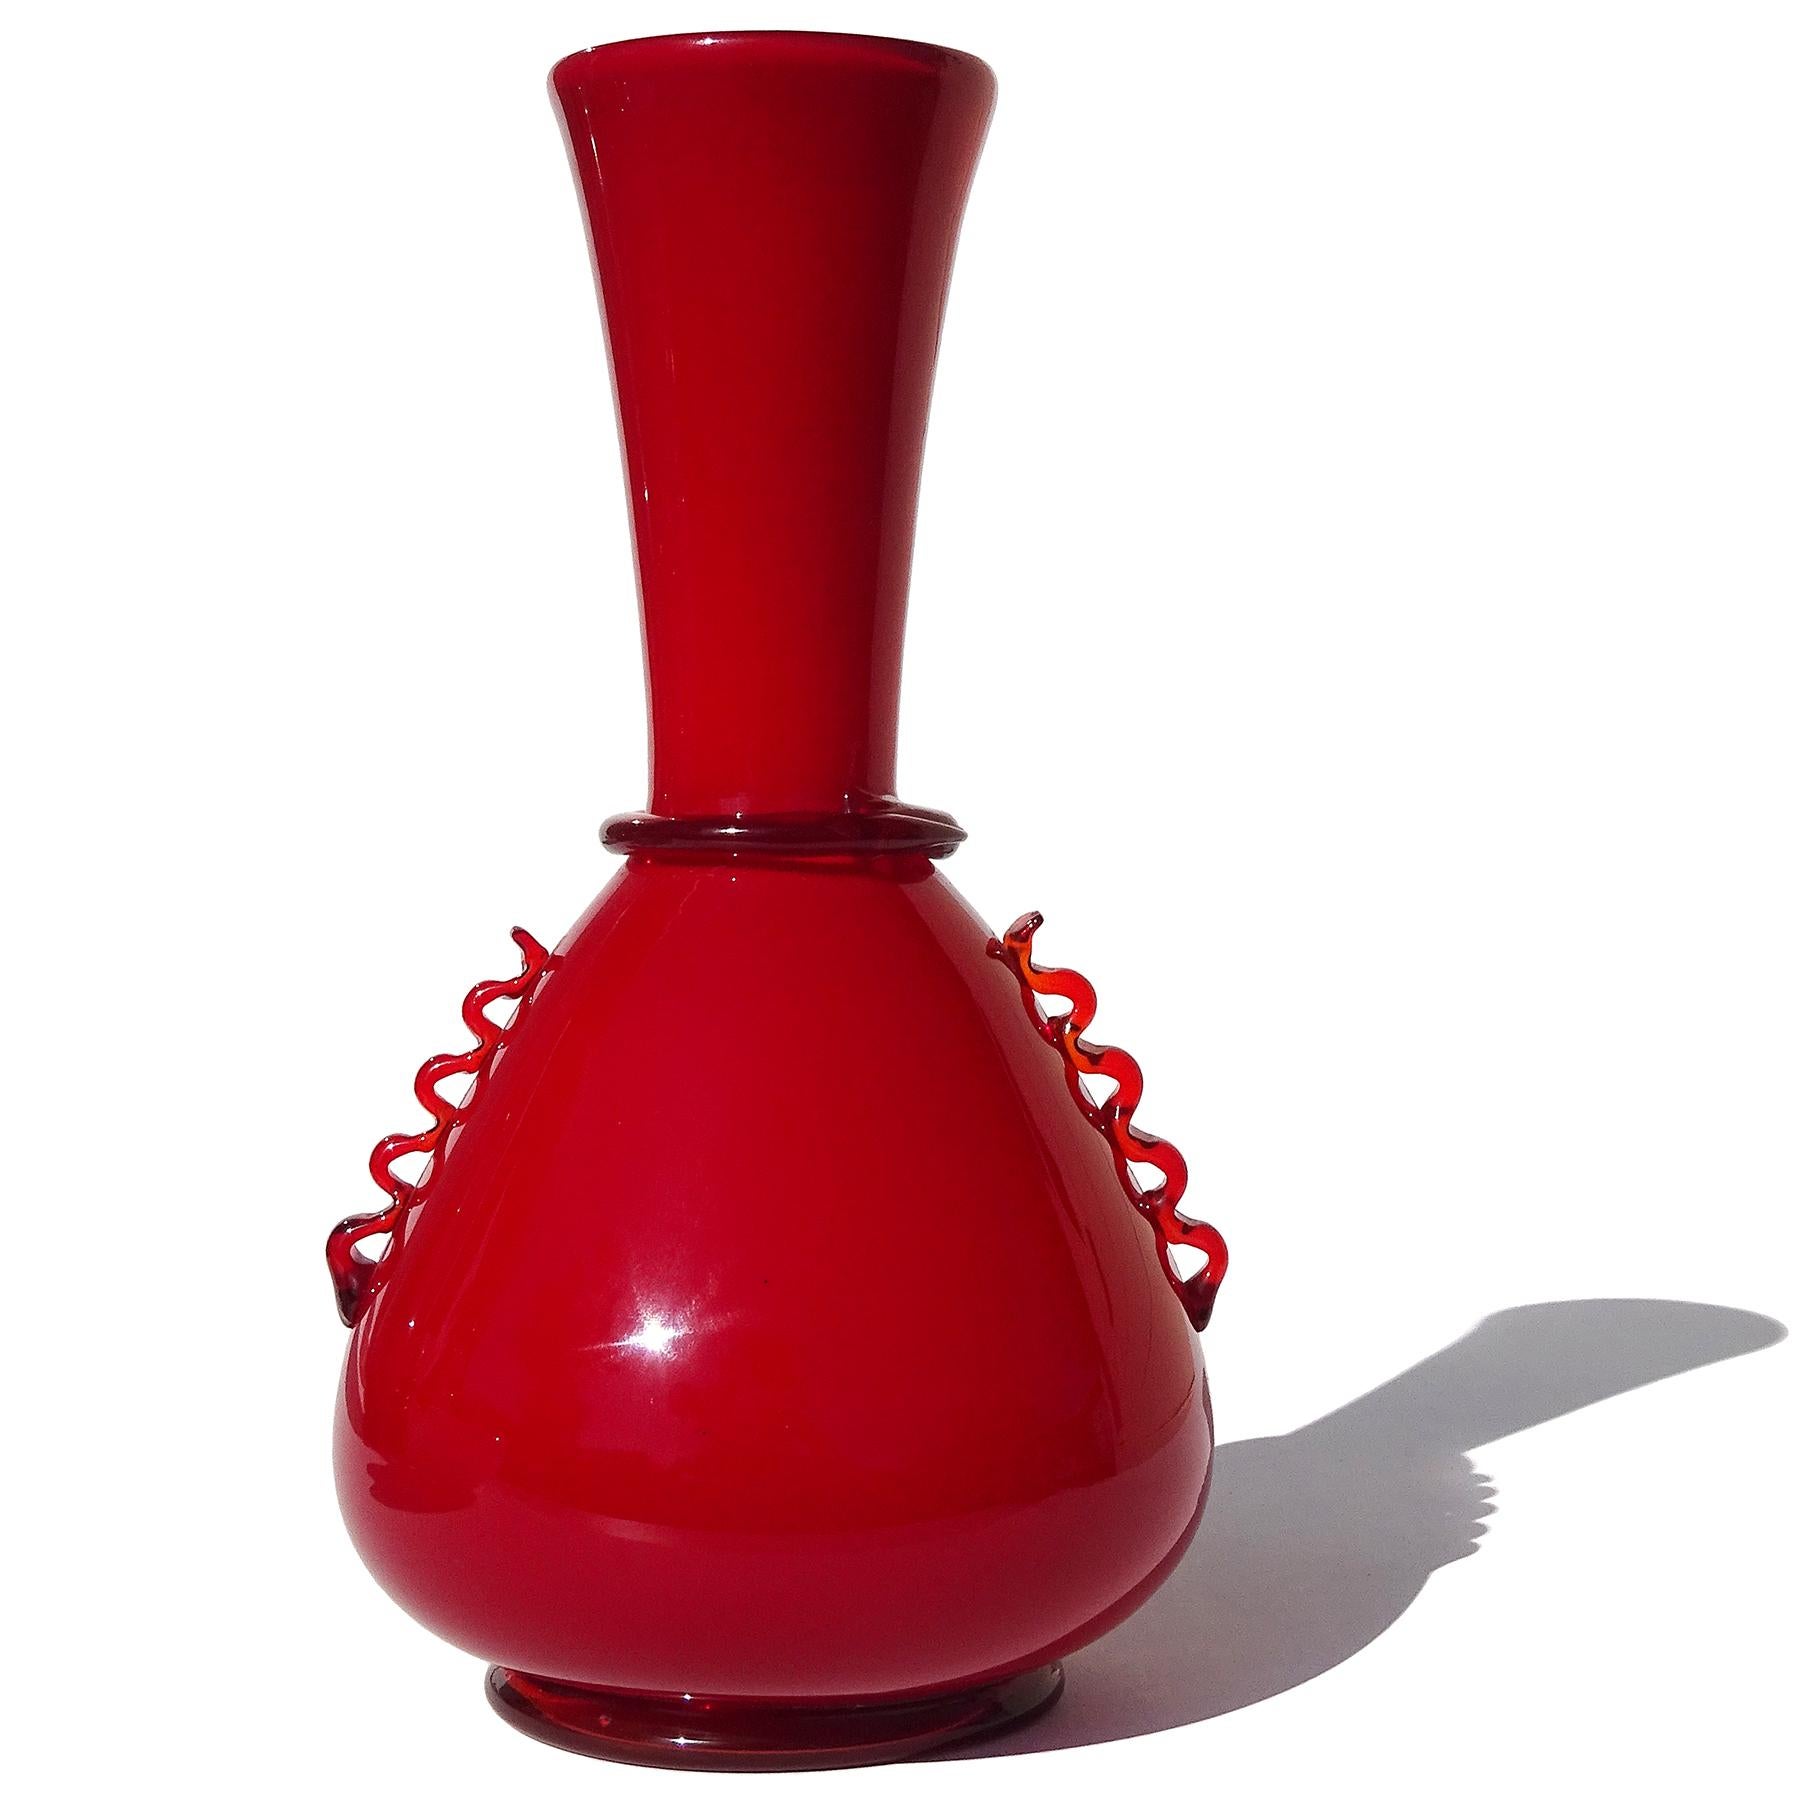 Magnifique et rare vase en verre soufflé à la main de Murano, d'un rouge rubis riche et stratifié, de style Art Déco italien. Créé par Giuseppe Chiacigh, peintre et designer italien, pour les Vetrerie Artistiche Cirilo Maschio Glassworks. La